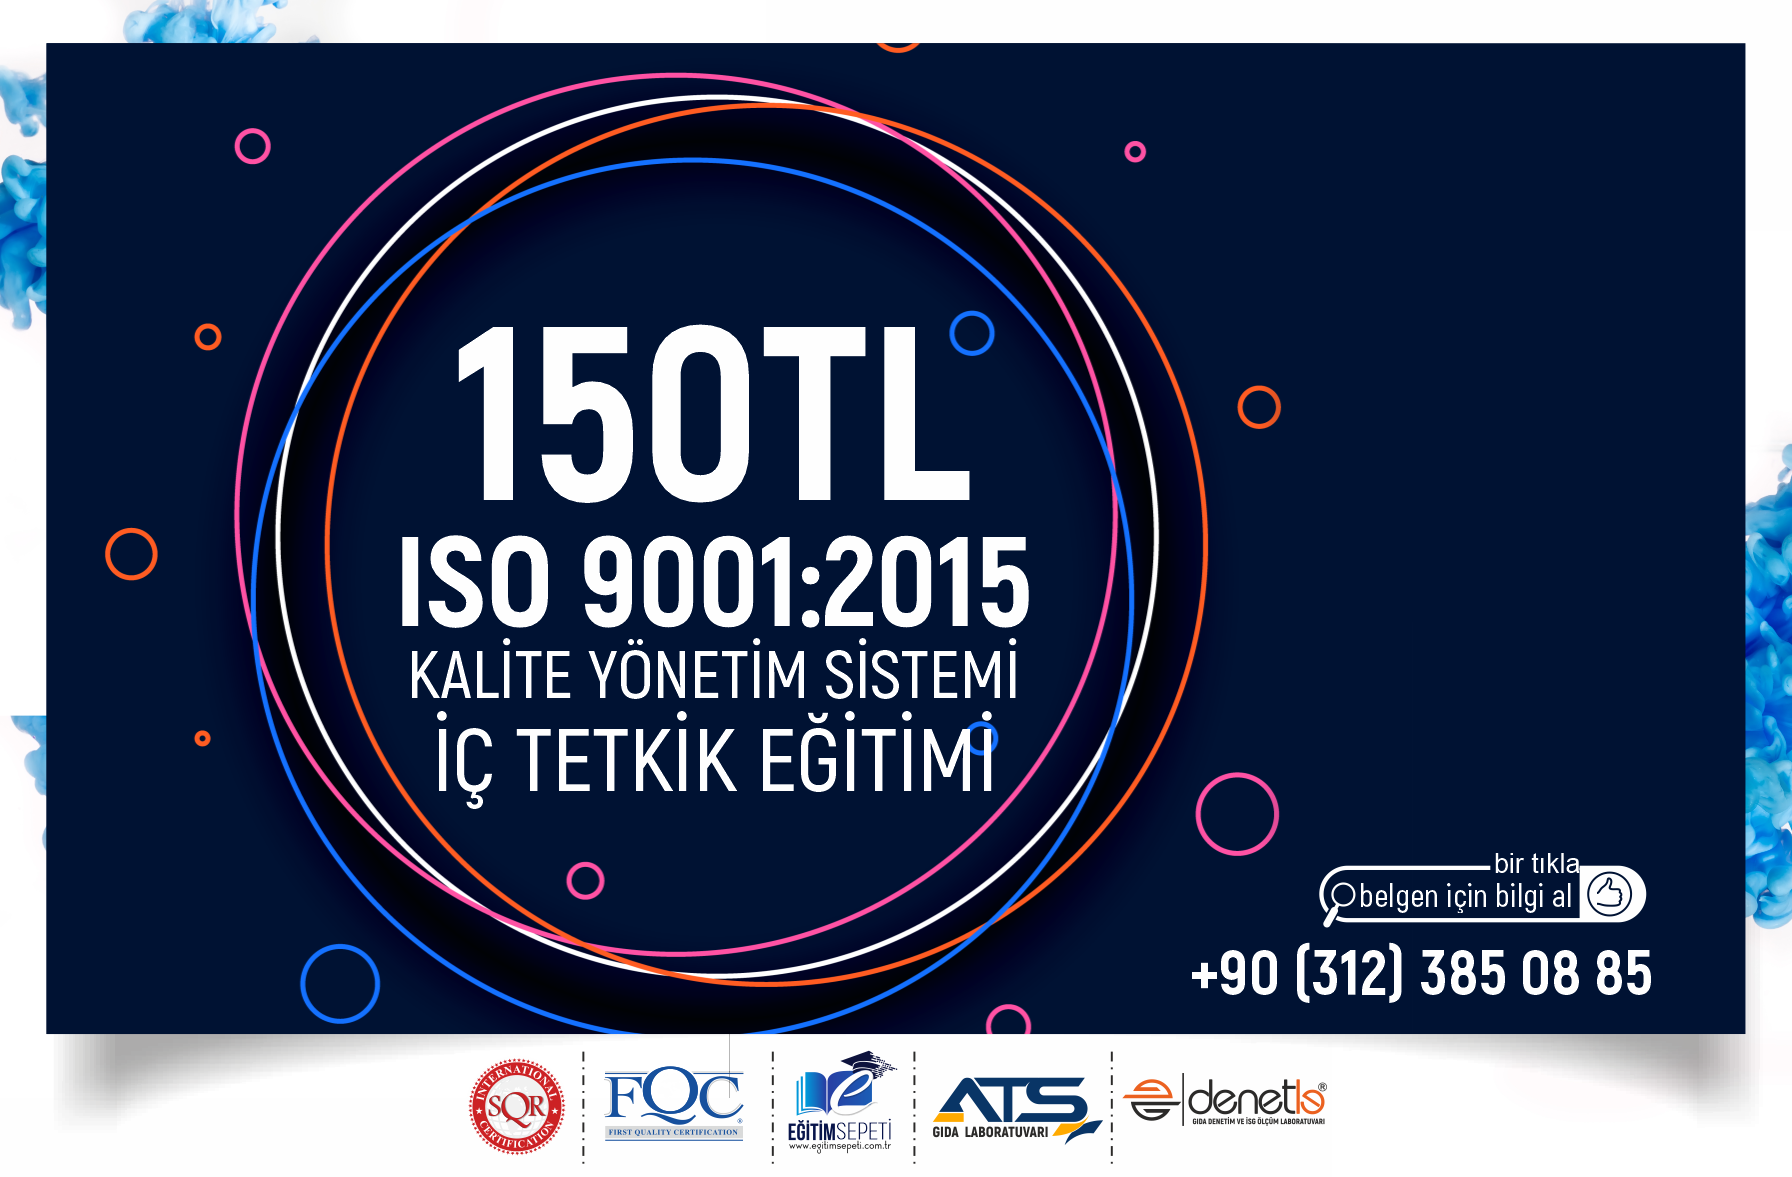 ISO 9001:2015 KALİTE YÖNETİM SİSTEMİ İÇ TETKİK EĞİTİMİ